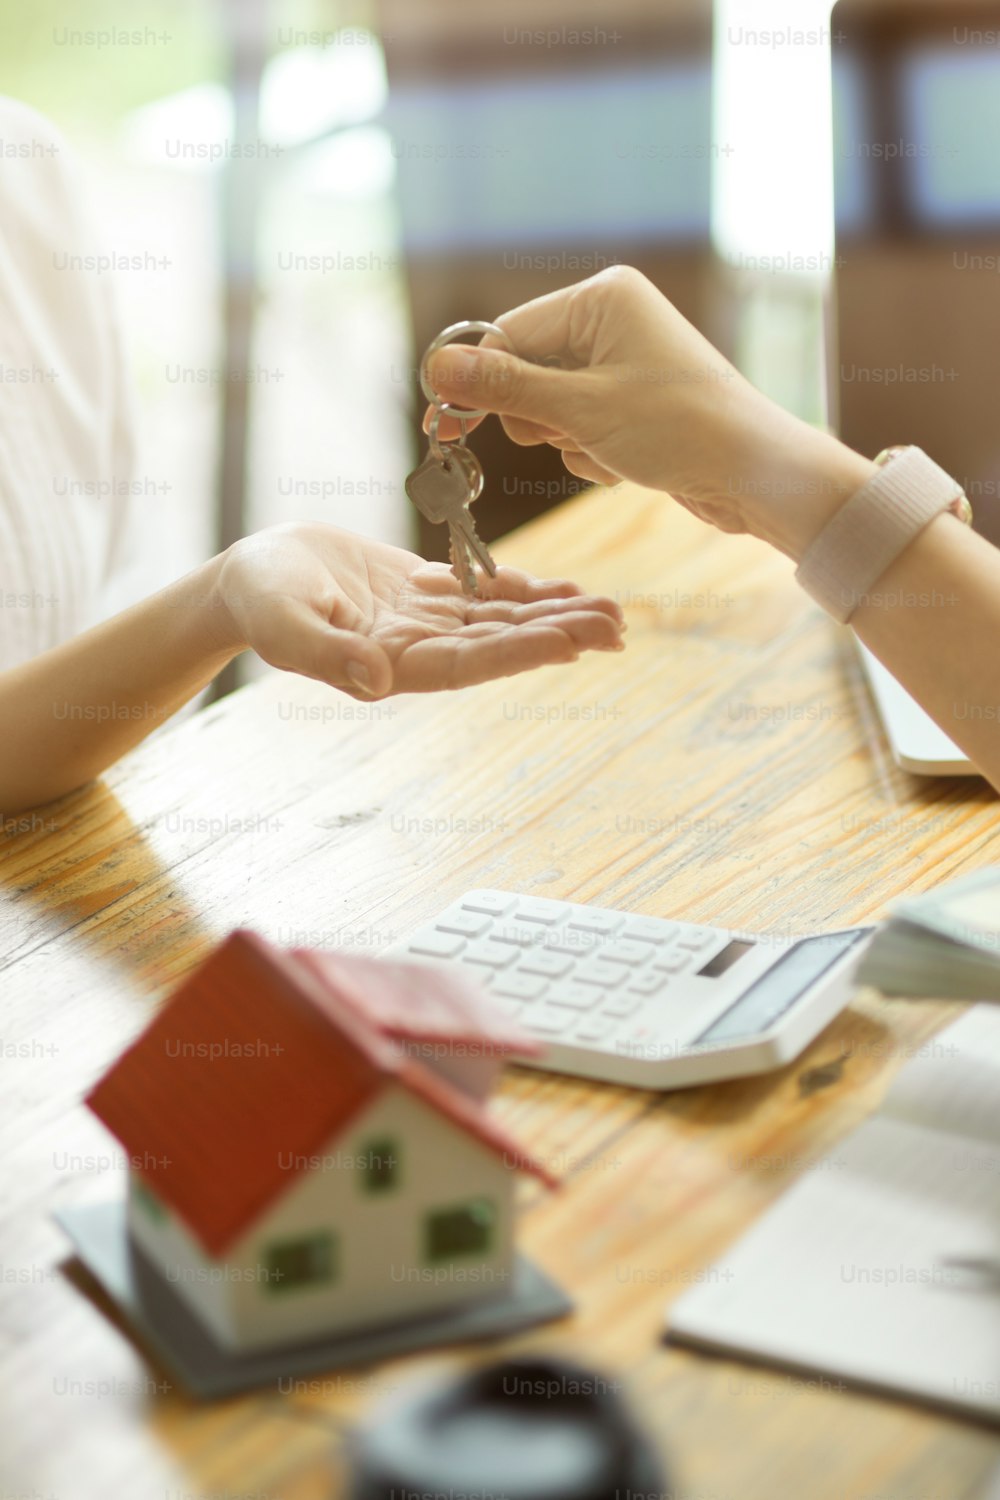 Imagem em close-up de um agente imobiliário entregando uma chave da casa a um novo inquilino depois de receber um depósito de aluguel.